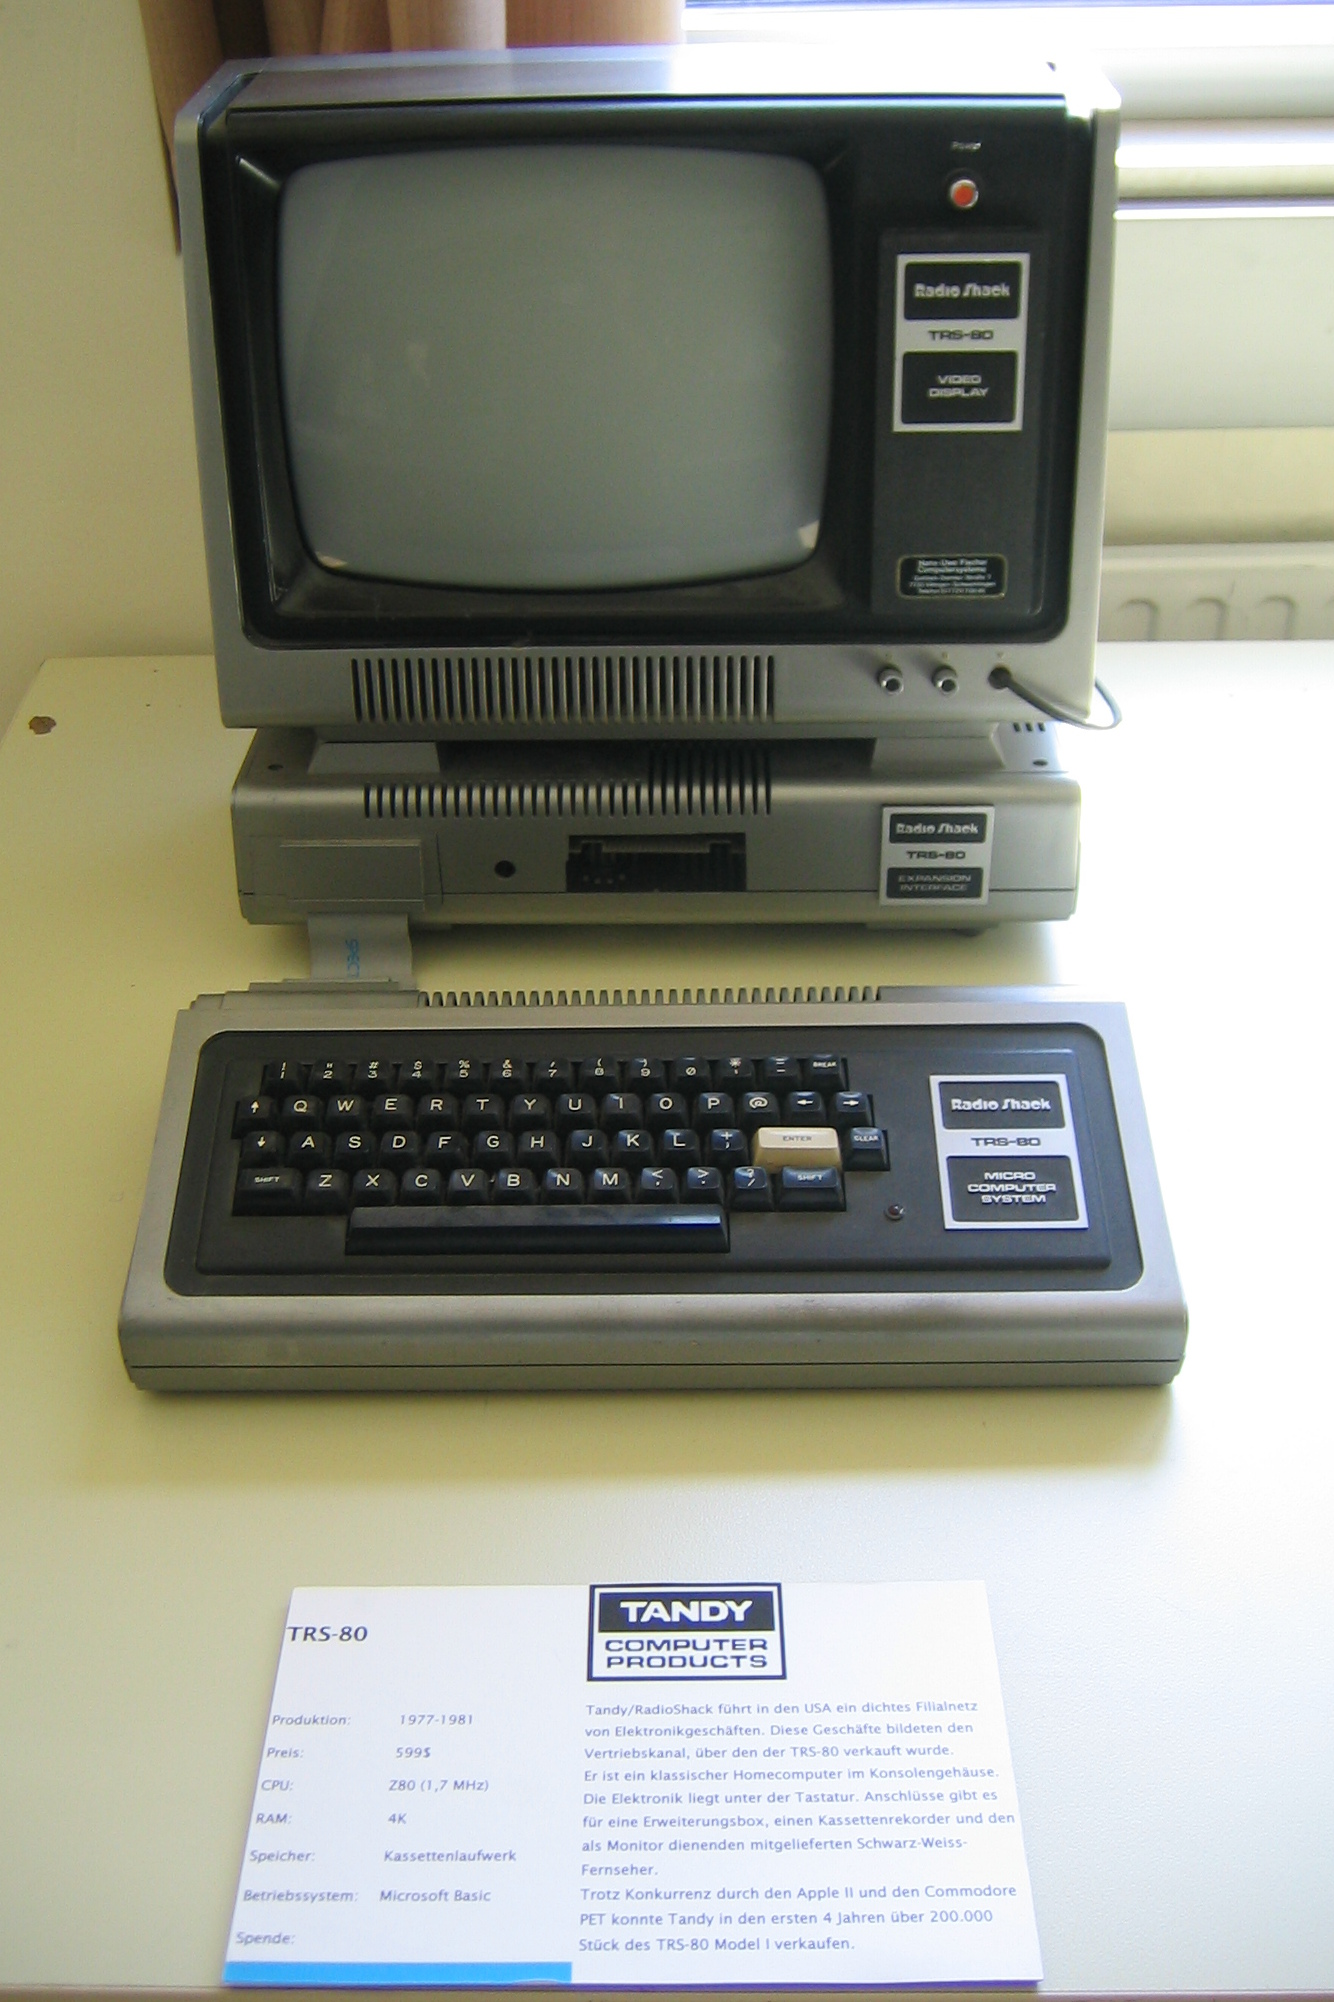 Mephisto Vancouver 68030 – Schachcomputer.info Wiki